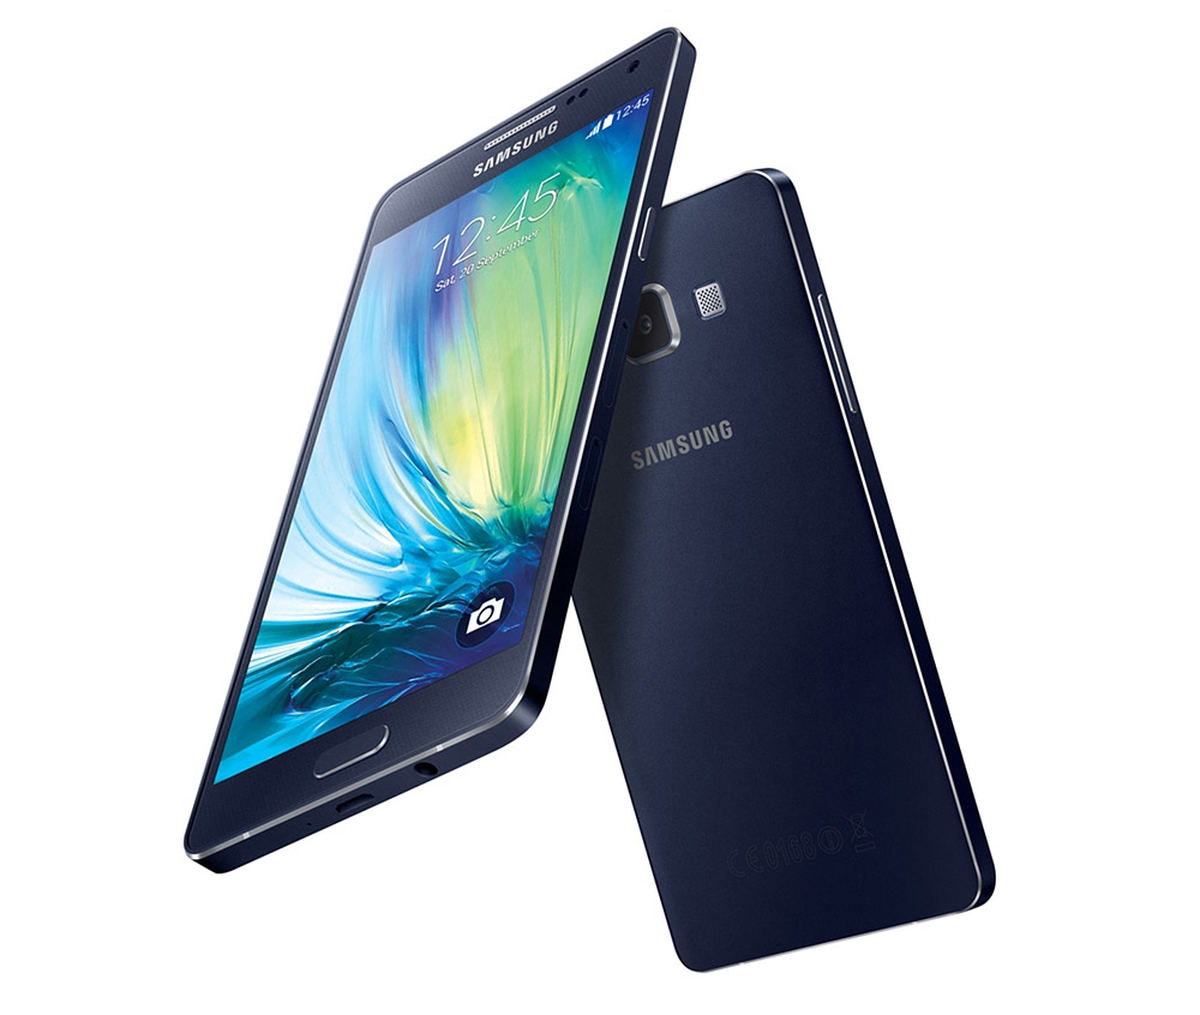 Samsung Galaxy A5 : Caratteristiche e Opinioni | JuzaPhoto